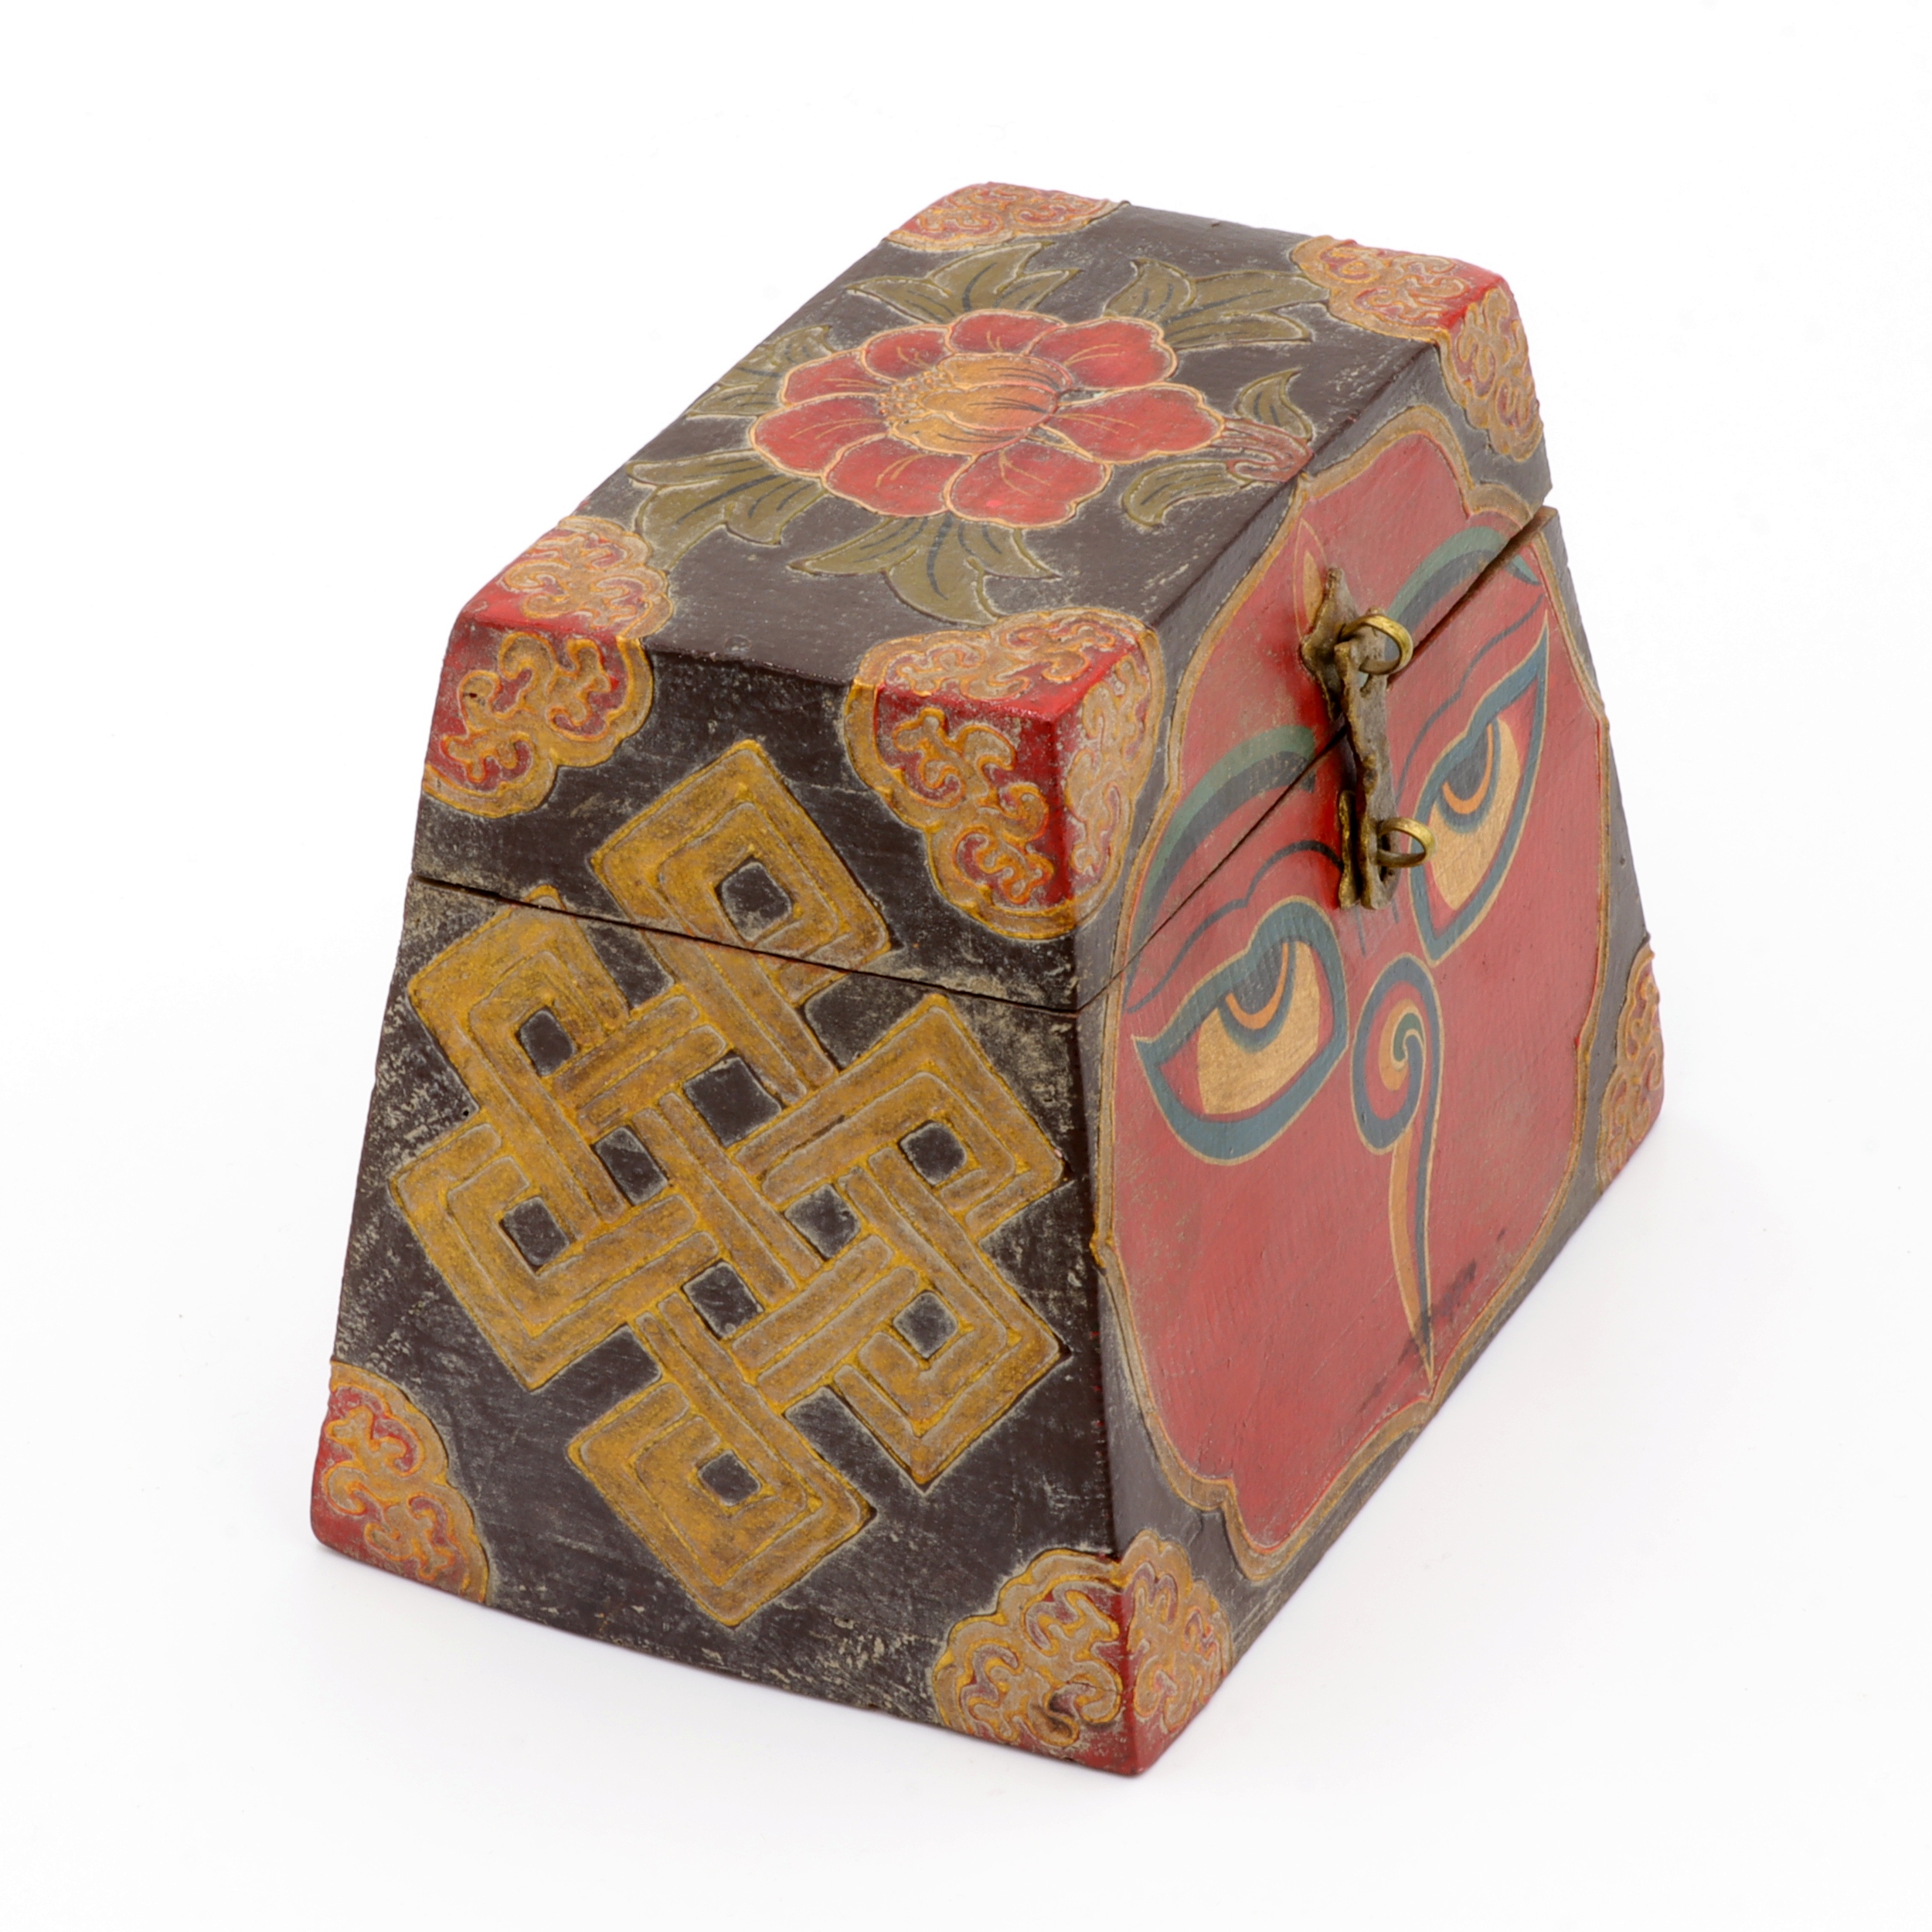 Handbemalte Kiste aus Holz - Buddha Eyes, Lotus, Endlosknoten - Trapez Design - typisch nepalesiche Farben - fair gehandelt aus Nepal